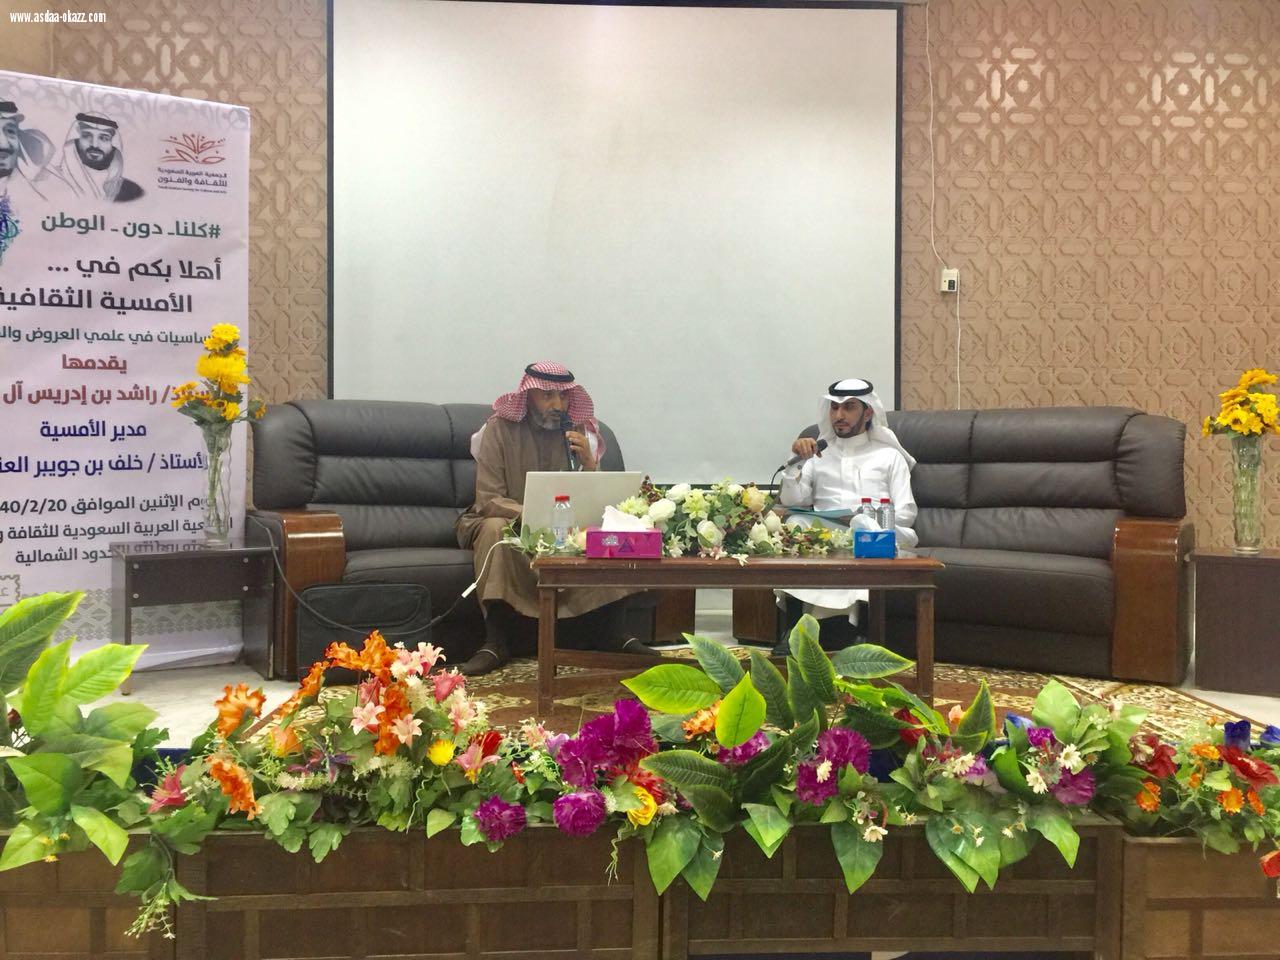 الجمعية العربية السعودية للثقافه والفنون تقيم ندوة ثقافية عن العروض والقافيه في عرعر